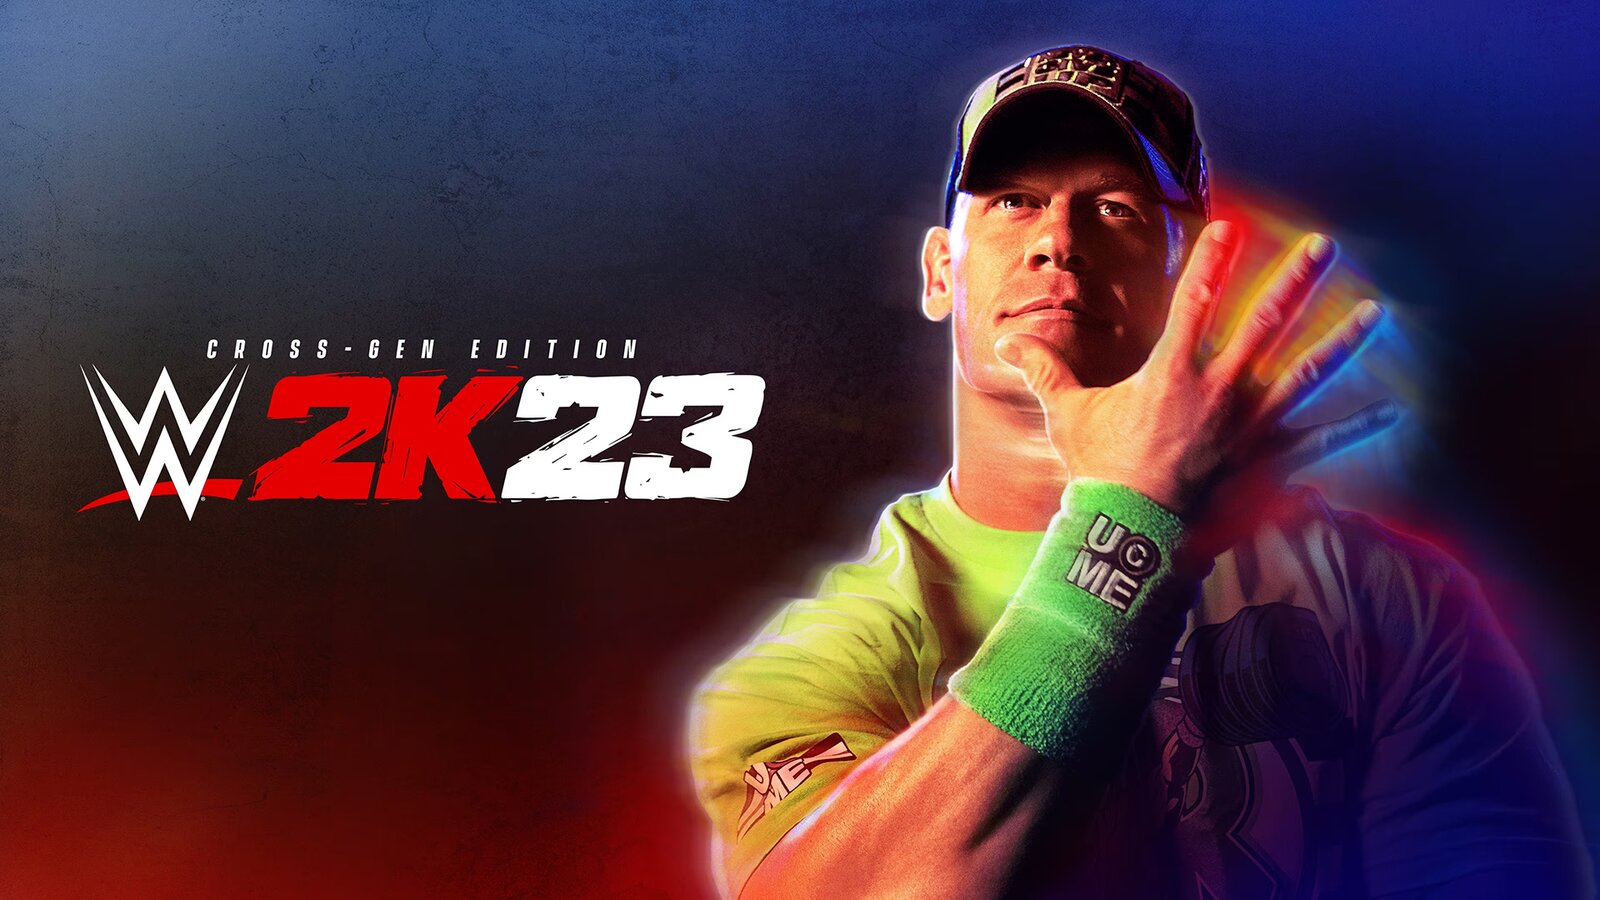 WWE 2K23 - Cross-Gen Digital Edition